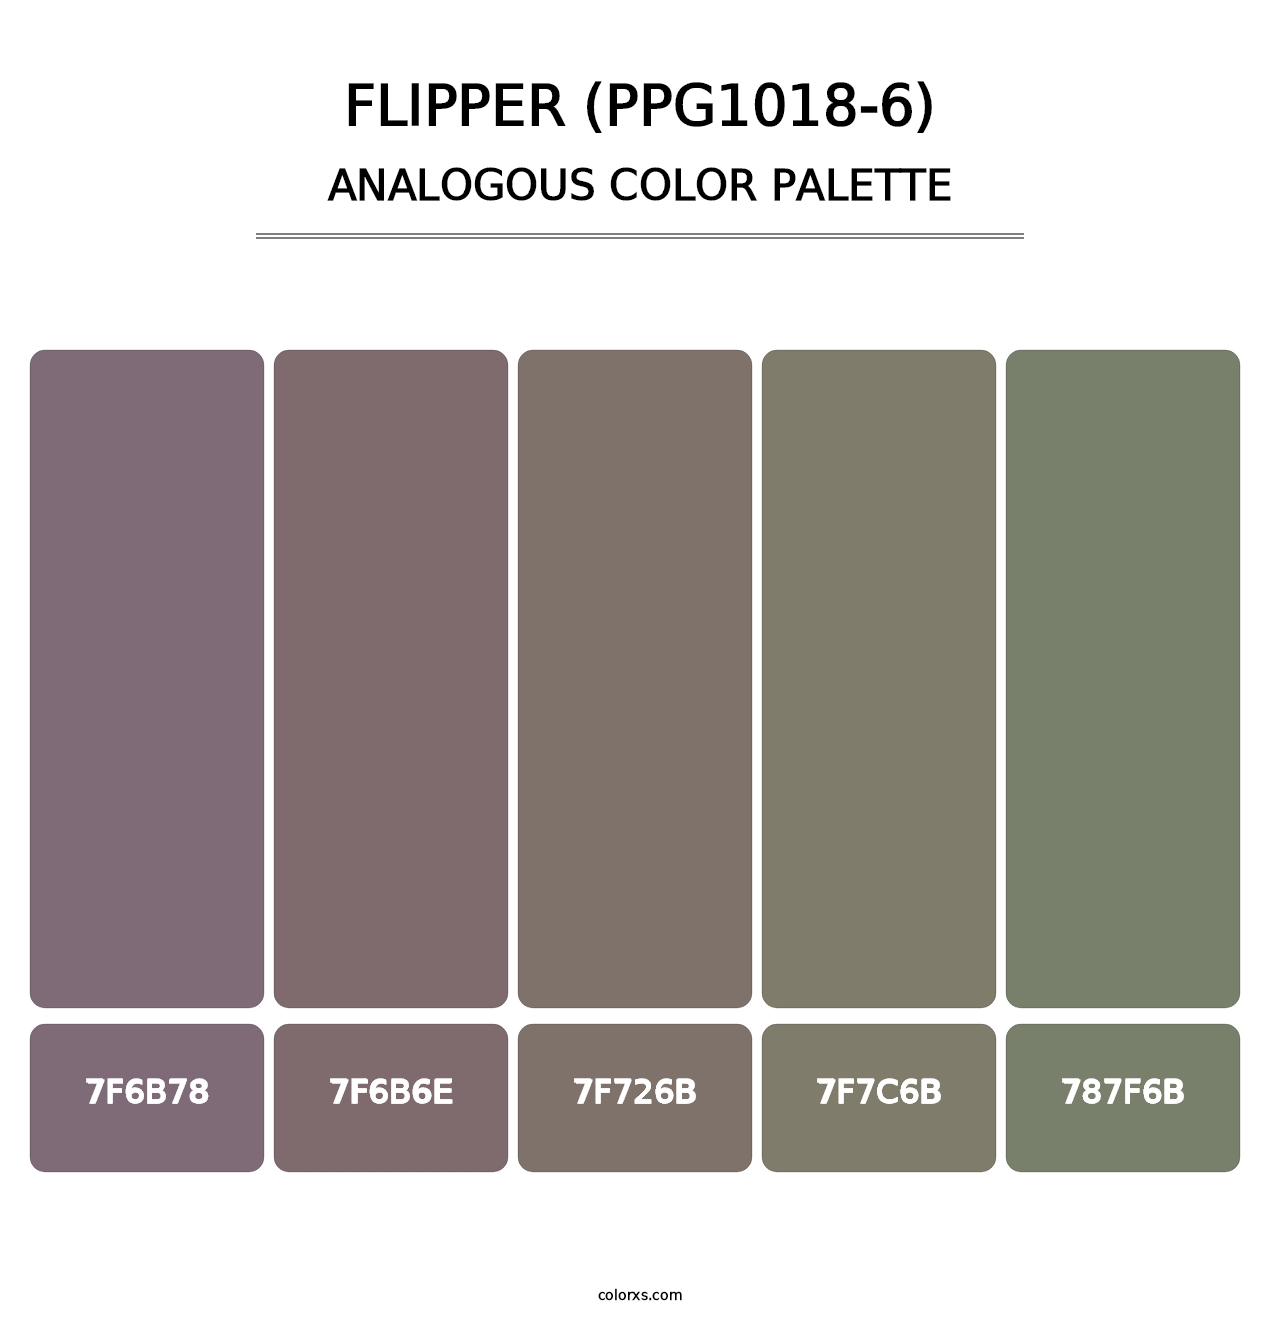 Flipper (PPG1018-6) - Analogous Color Palette